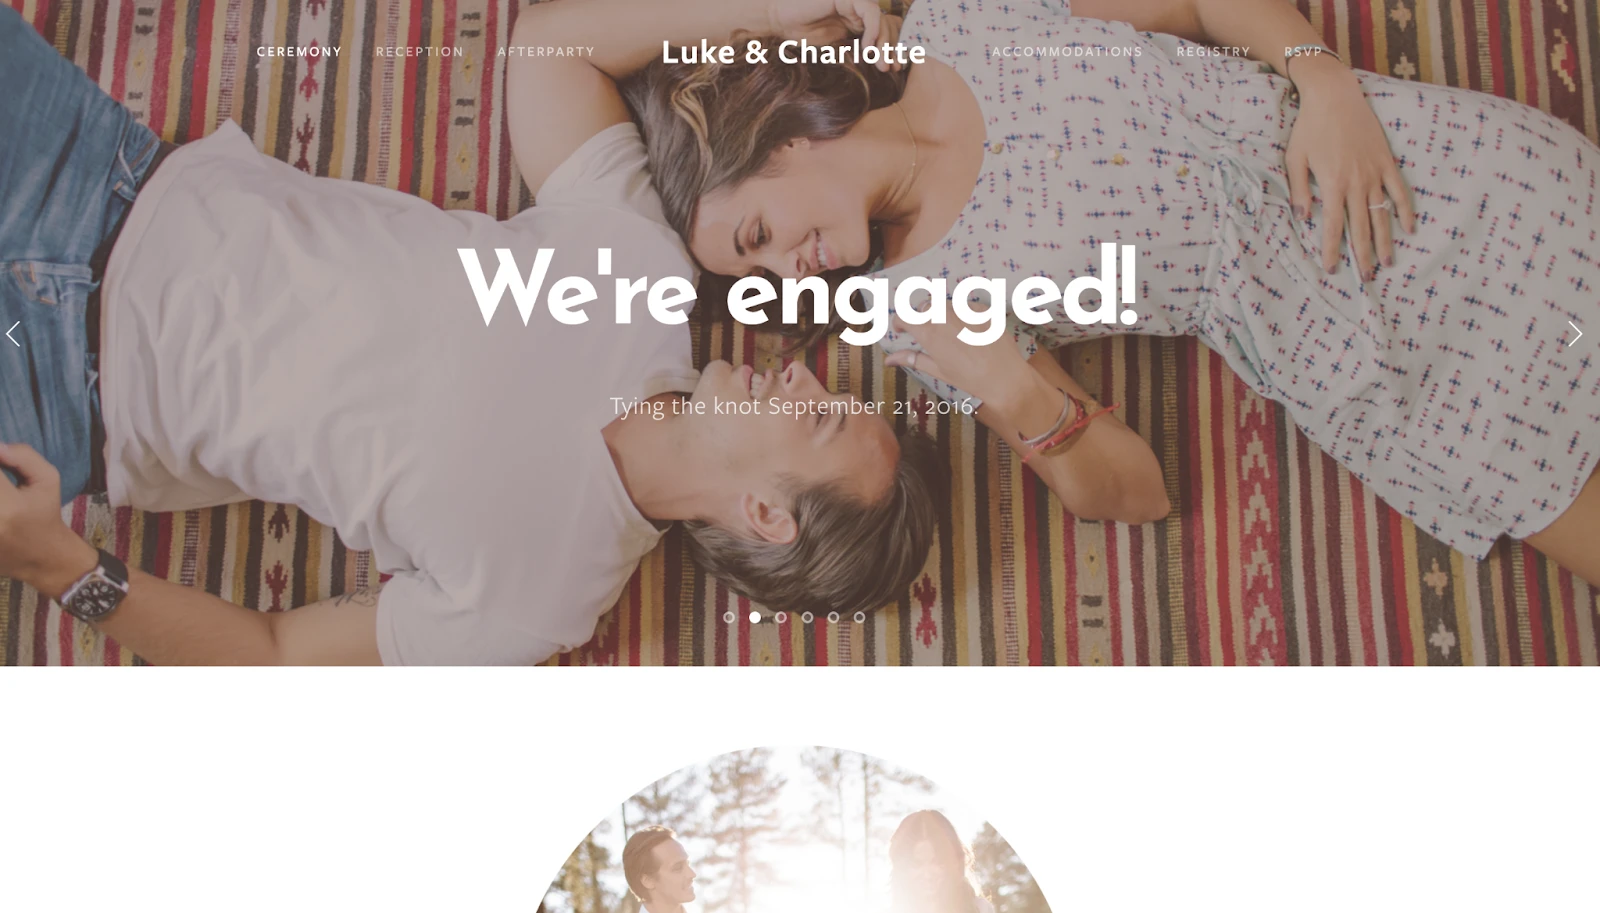 wedding website examples